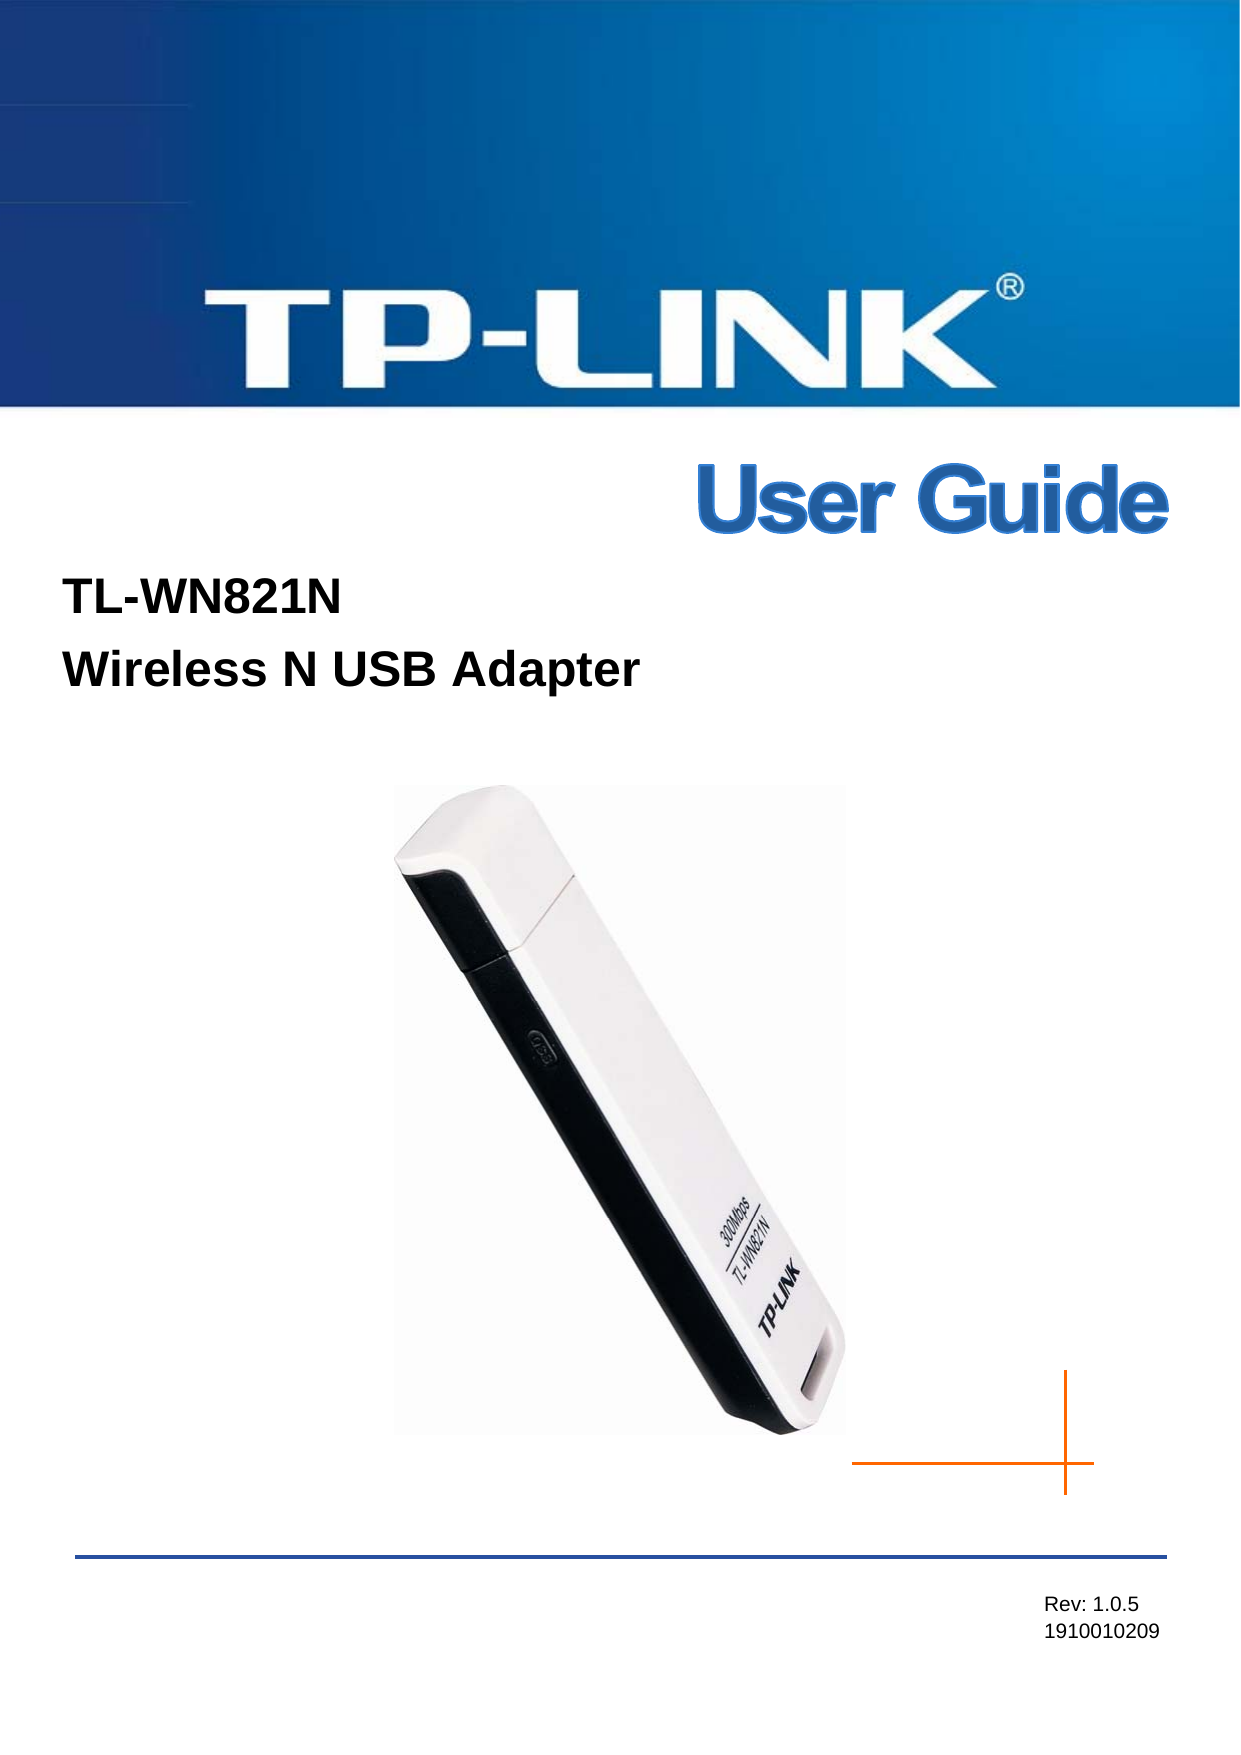 TL-WN821N  Wireless N USB Adapter   TL-WN821N Wireless N USB Adapter     Rev: 1.0.5 1910010209  